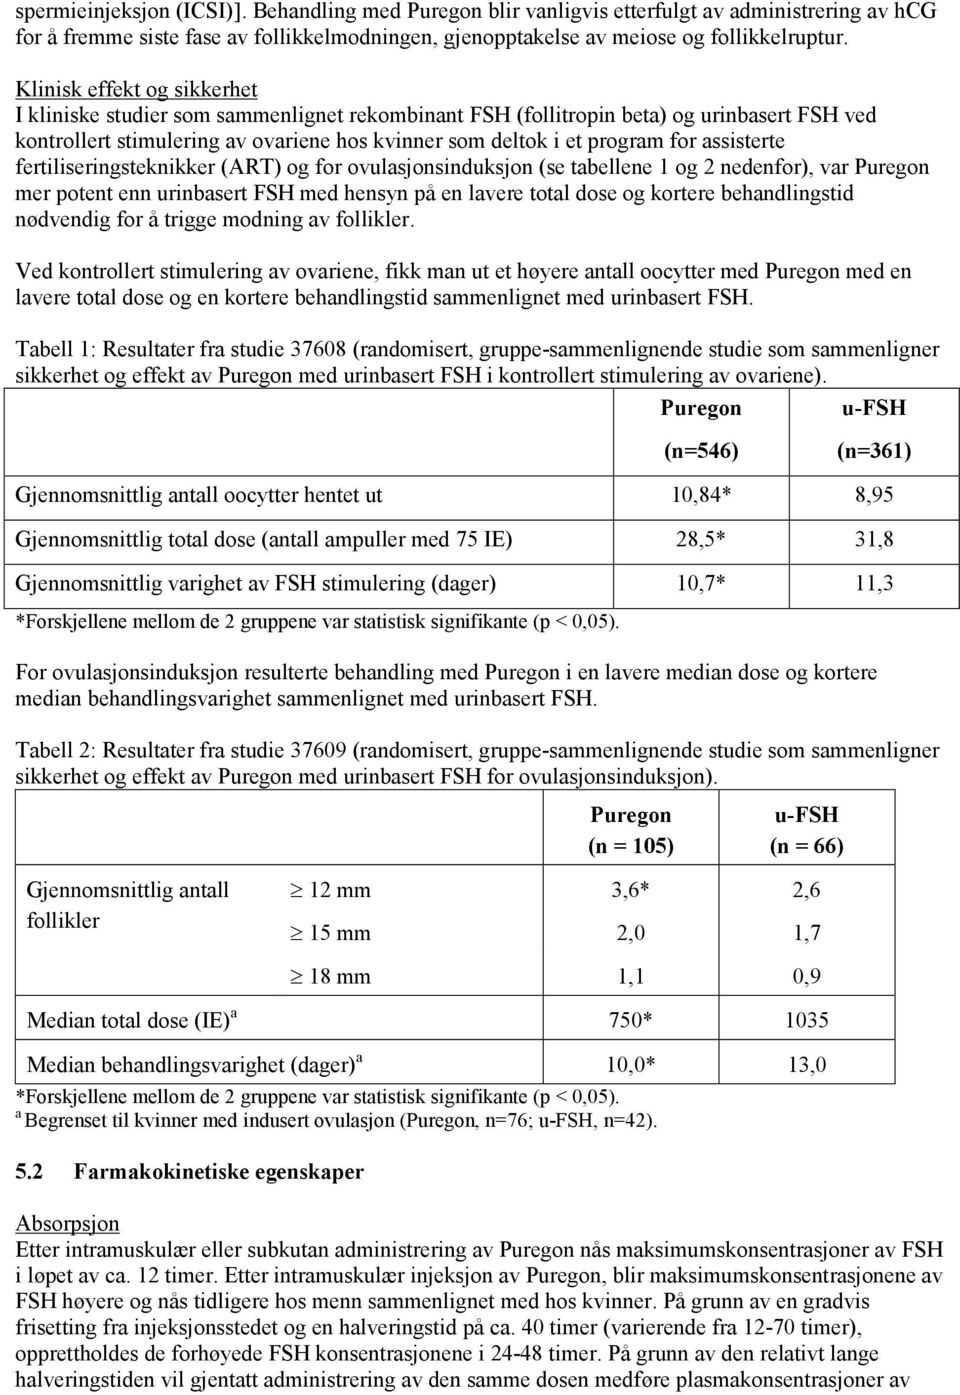 assisterte fertiliseringsteknikker (ART) og for ovulasjonsinduksjon (se tabellene 1 og 2 nedenfor), var Puregon mer potent enn urinbasert FSH med hensyn på en lavere total dose og kortere